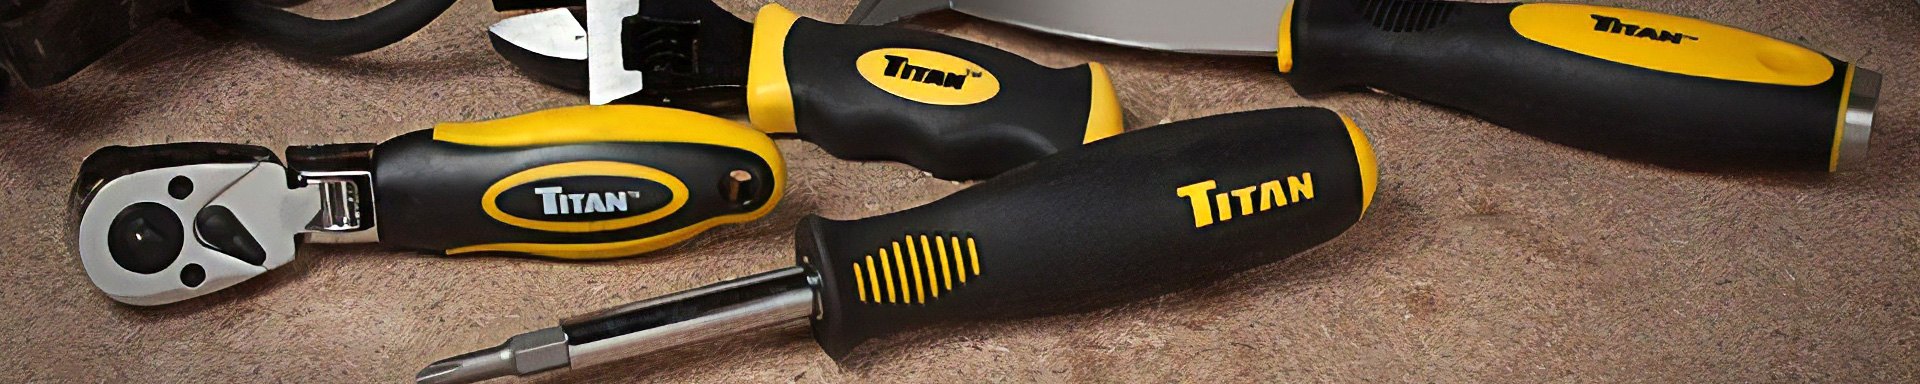 Titan Tools Lockout Kits